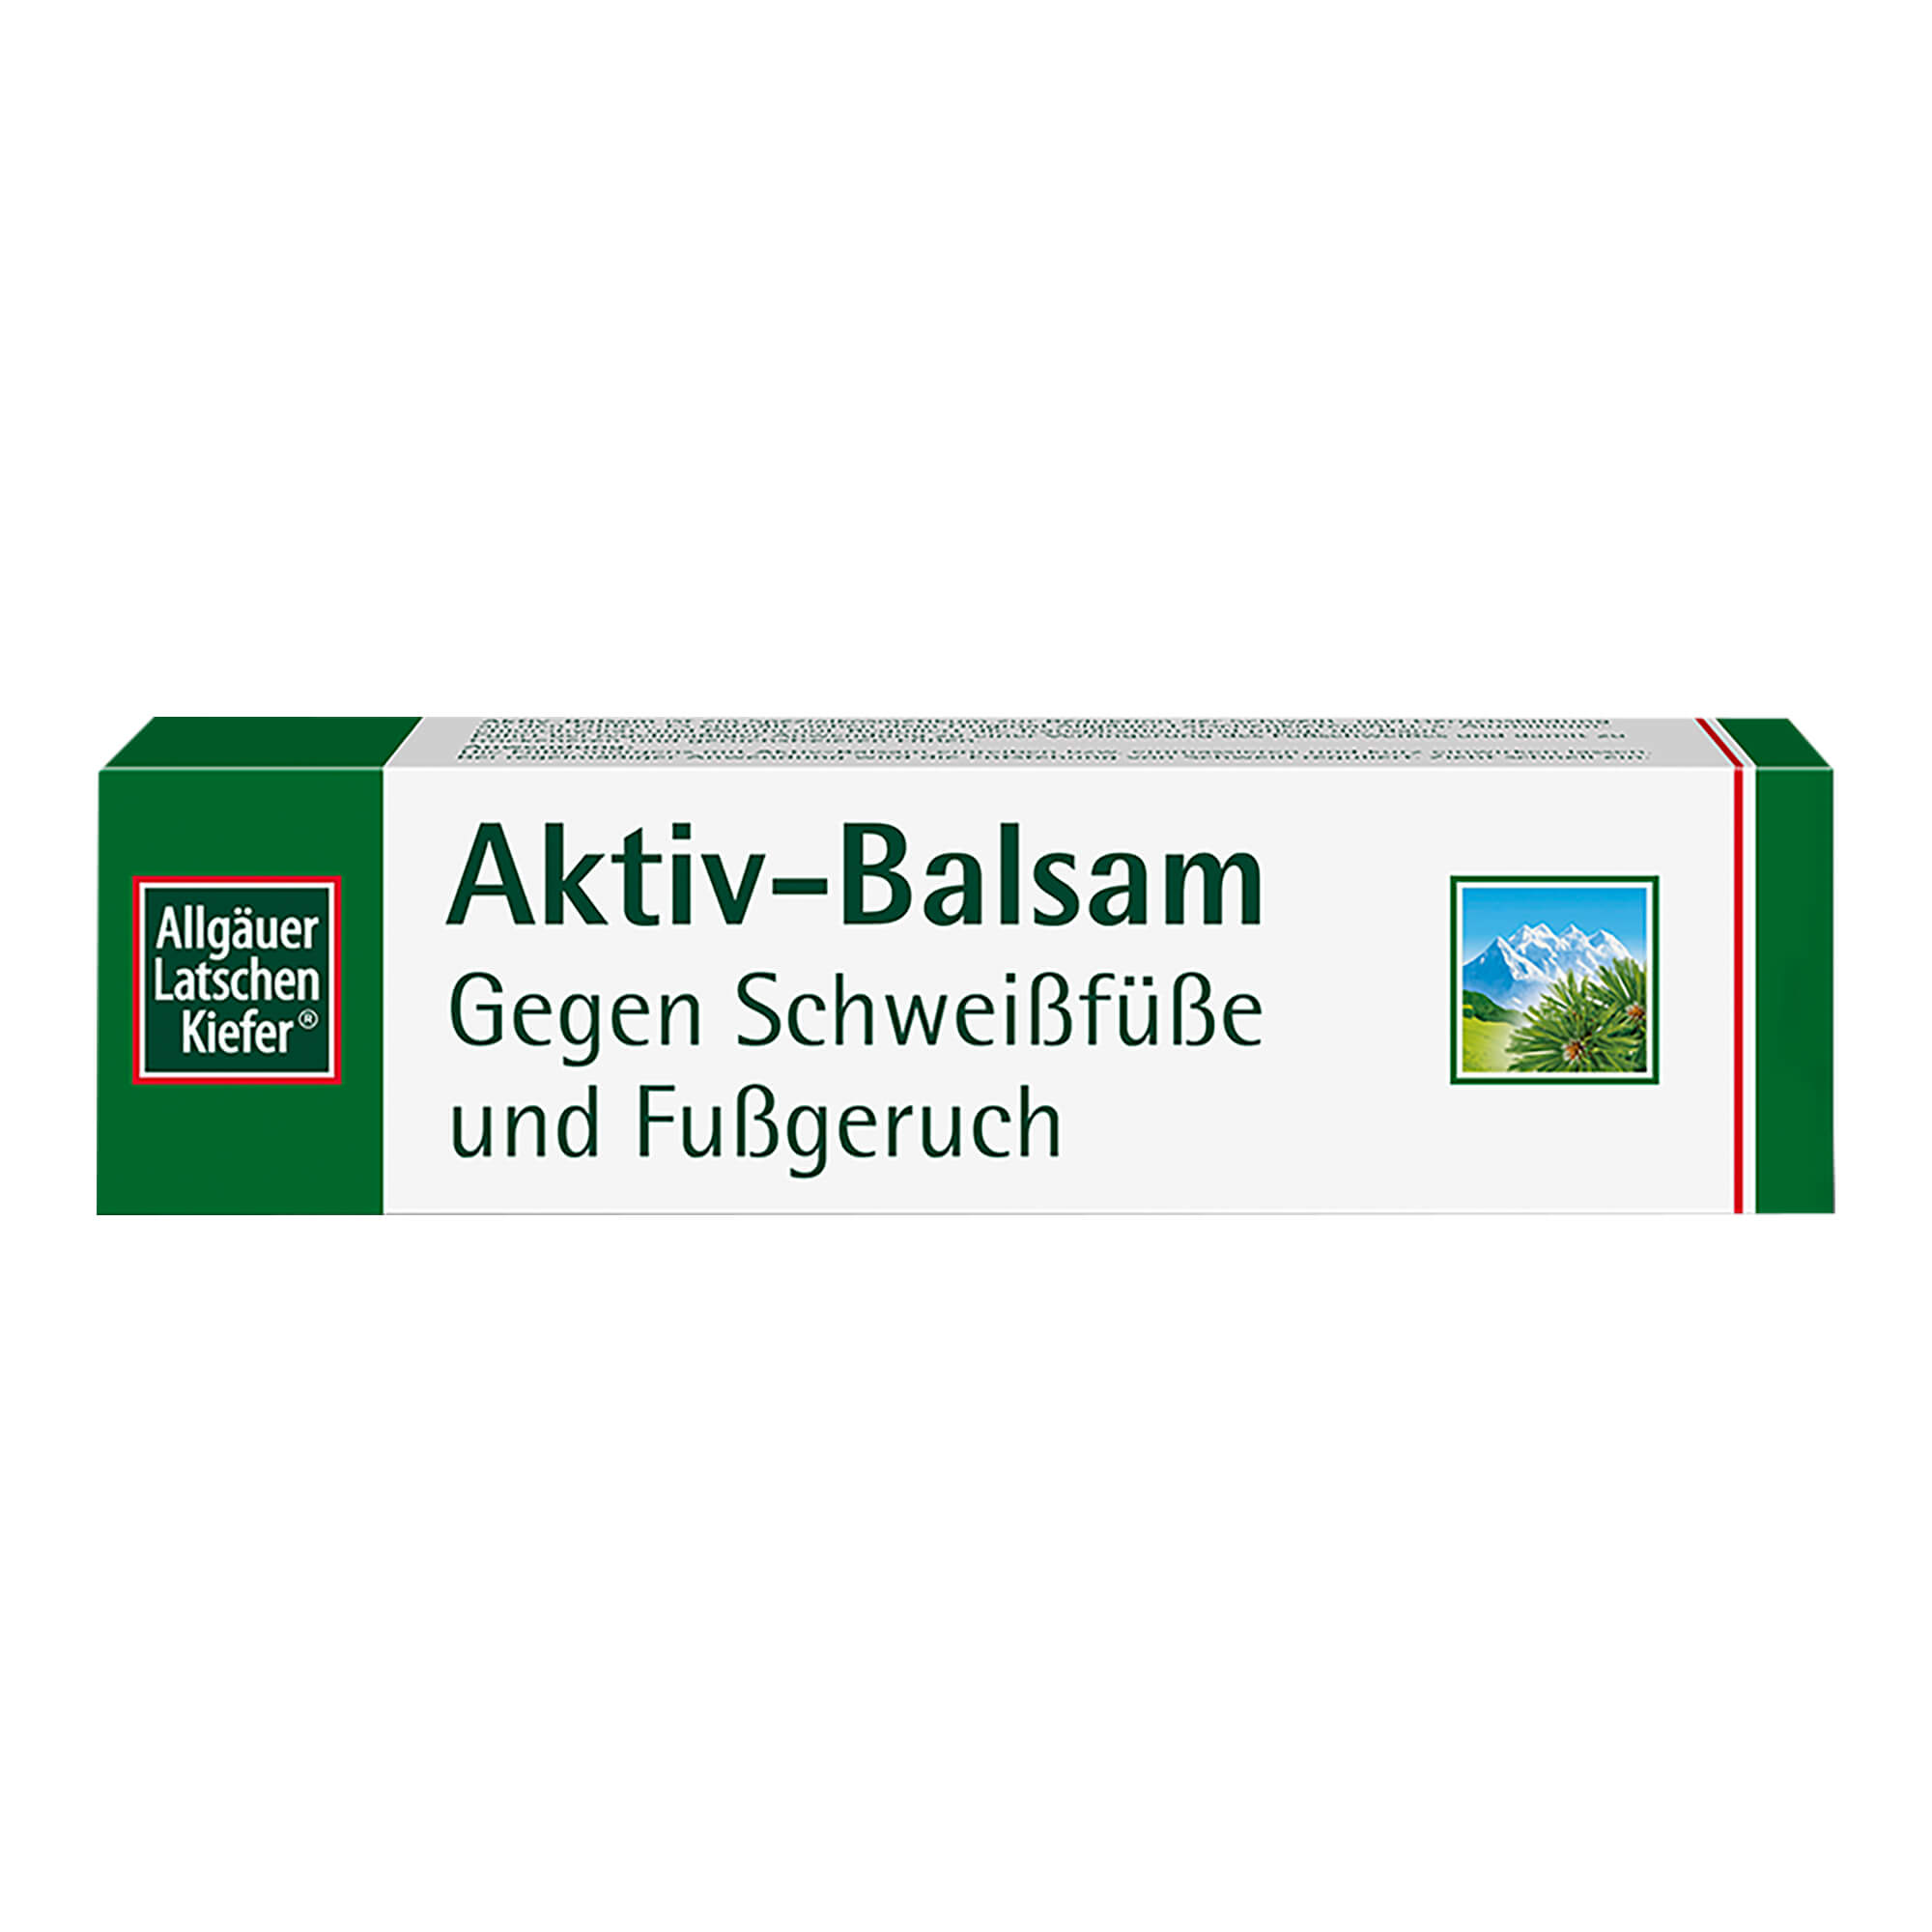 Allgäuer Latschenkiefer Aktiv-Balsam